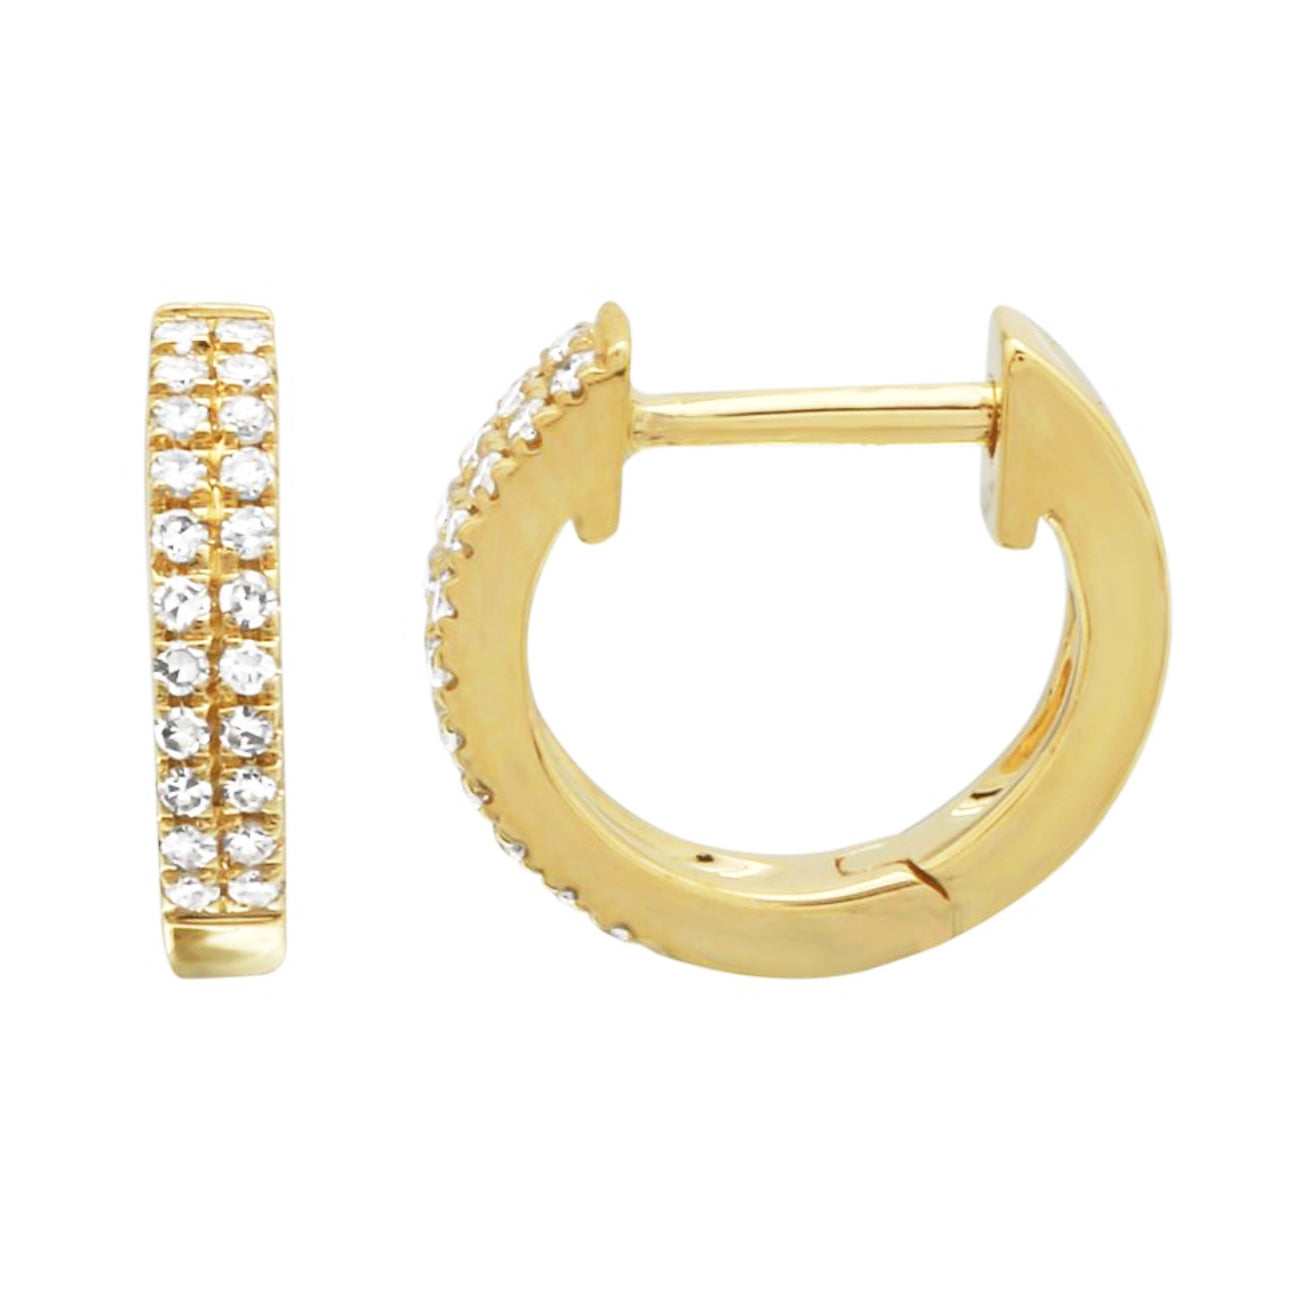 Double Row Diamond Huggie Earrings in 14k Gold